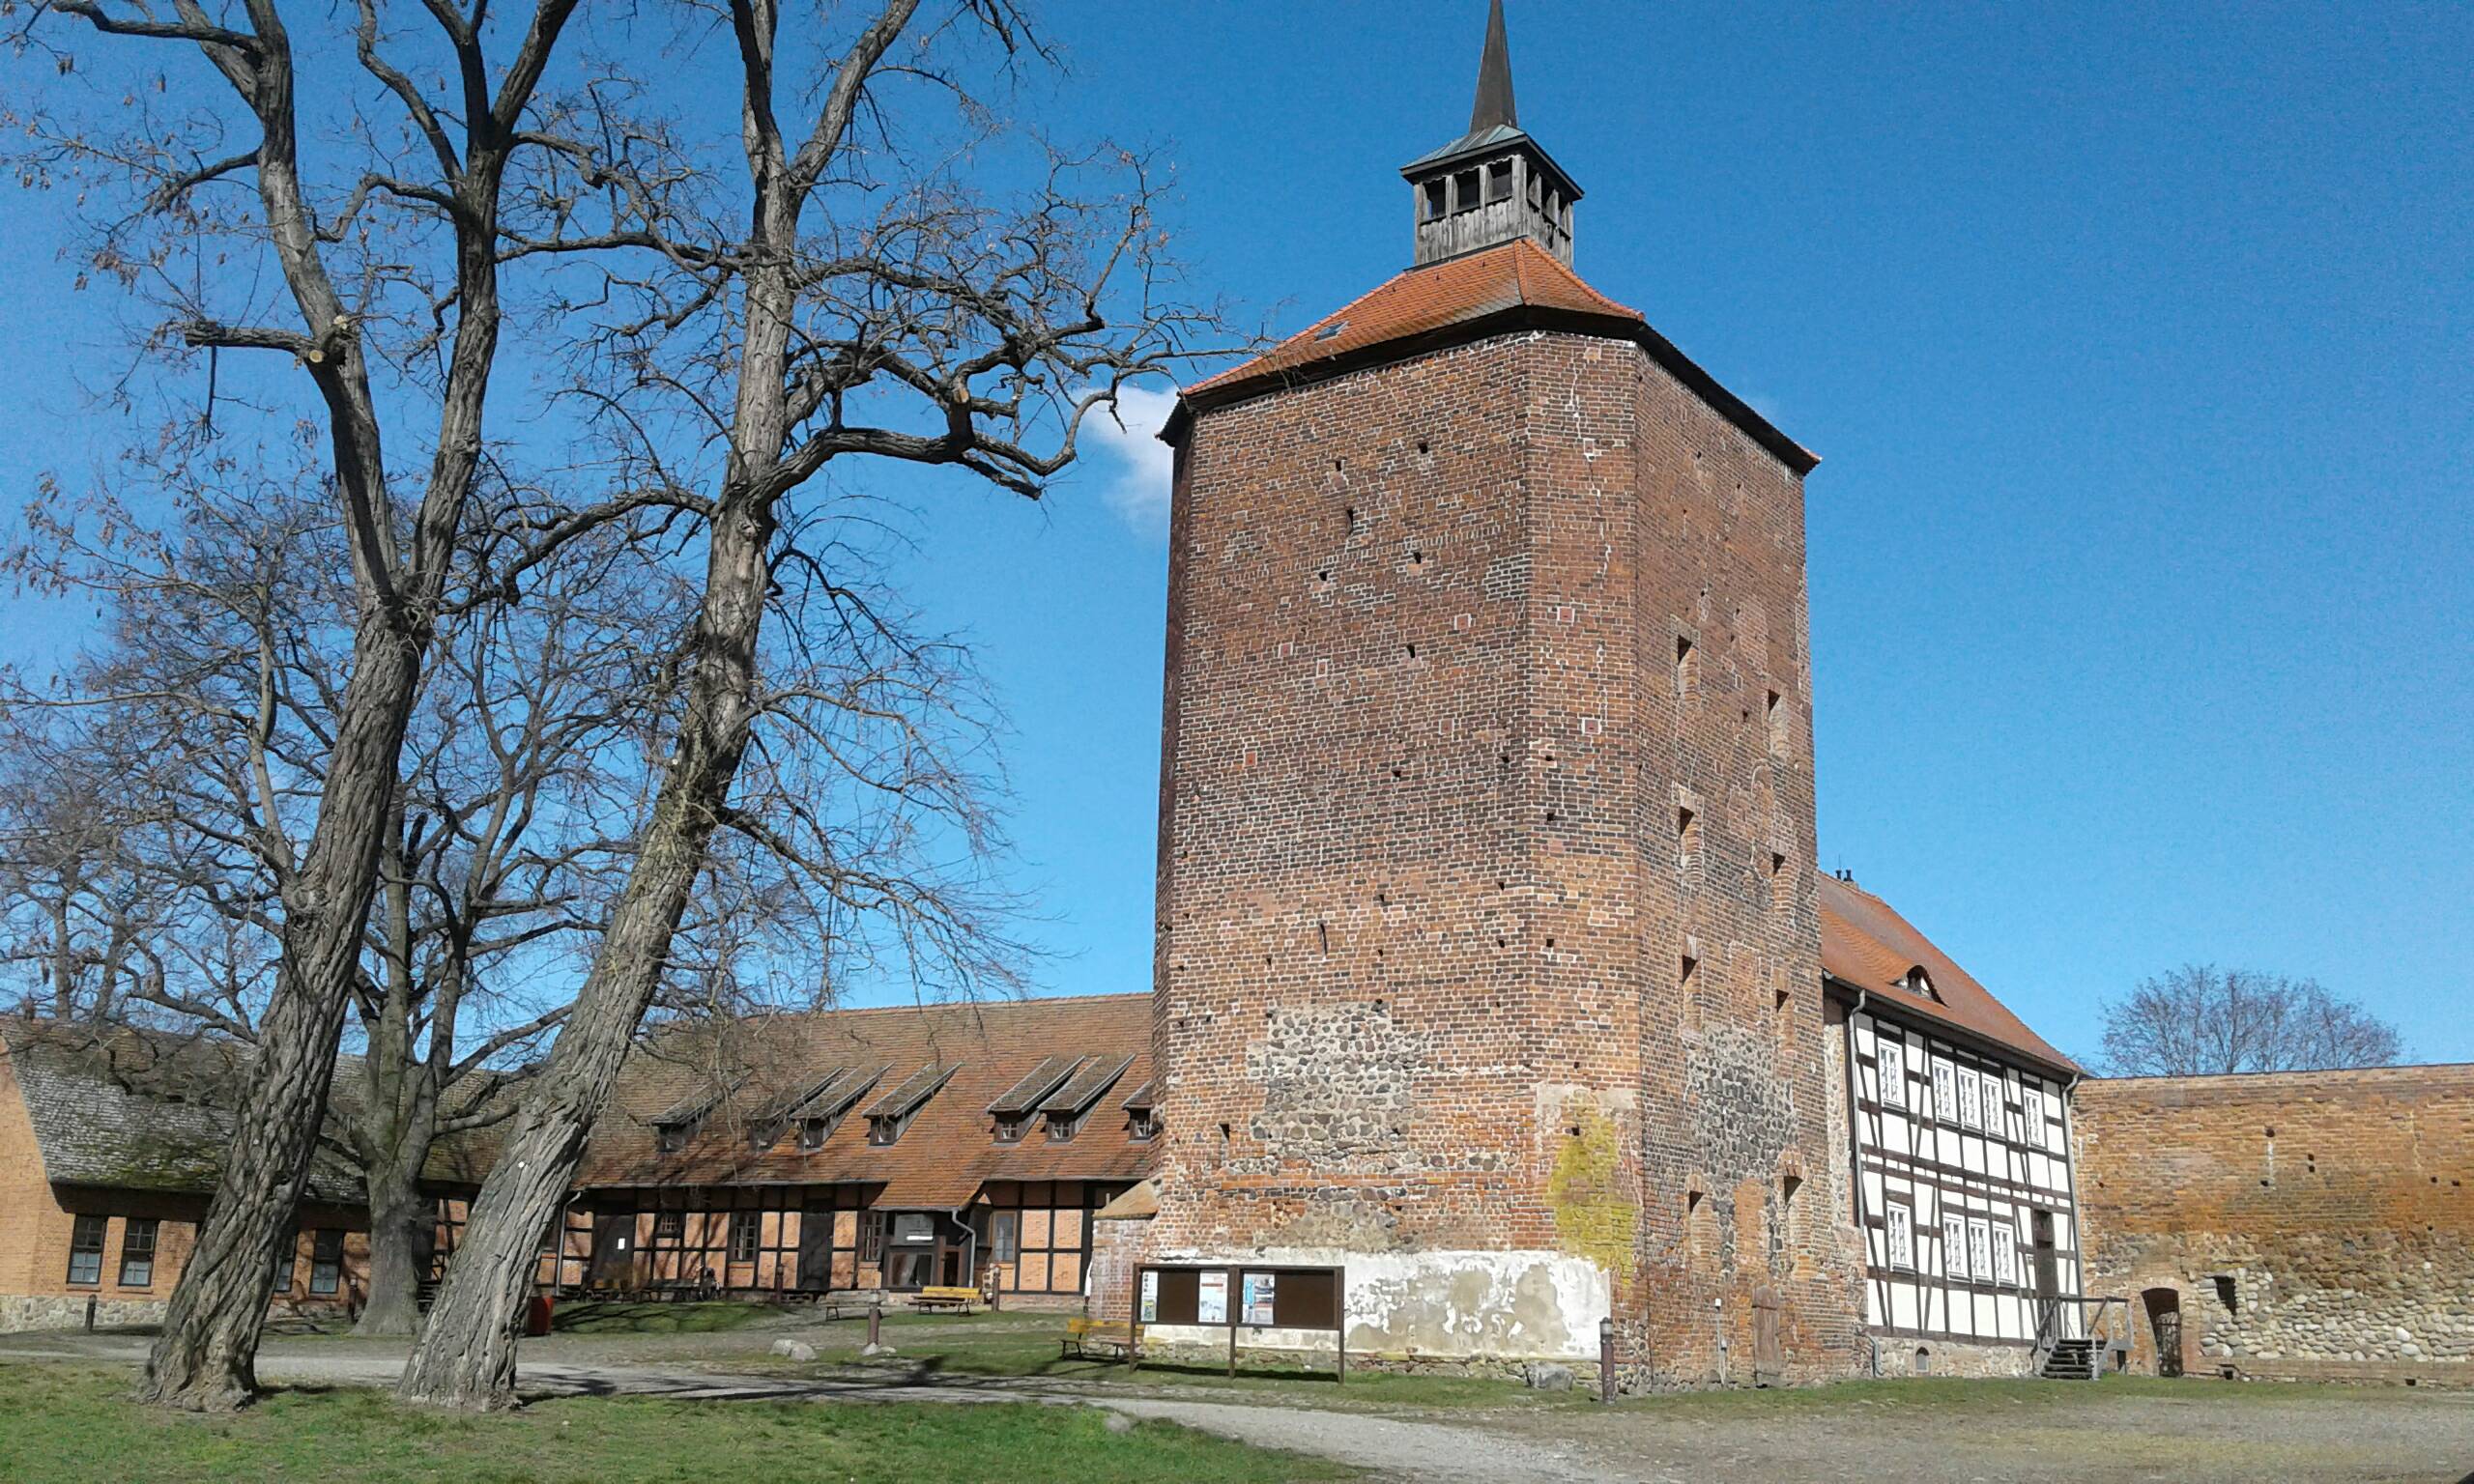 Bild 1 Burg Beeskow in Beeskow